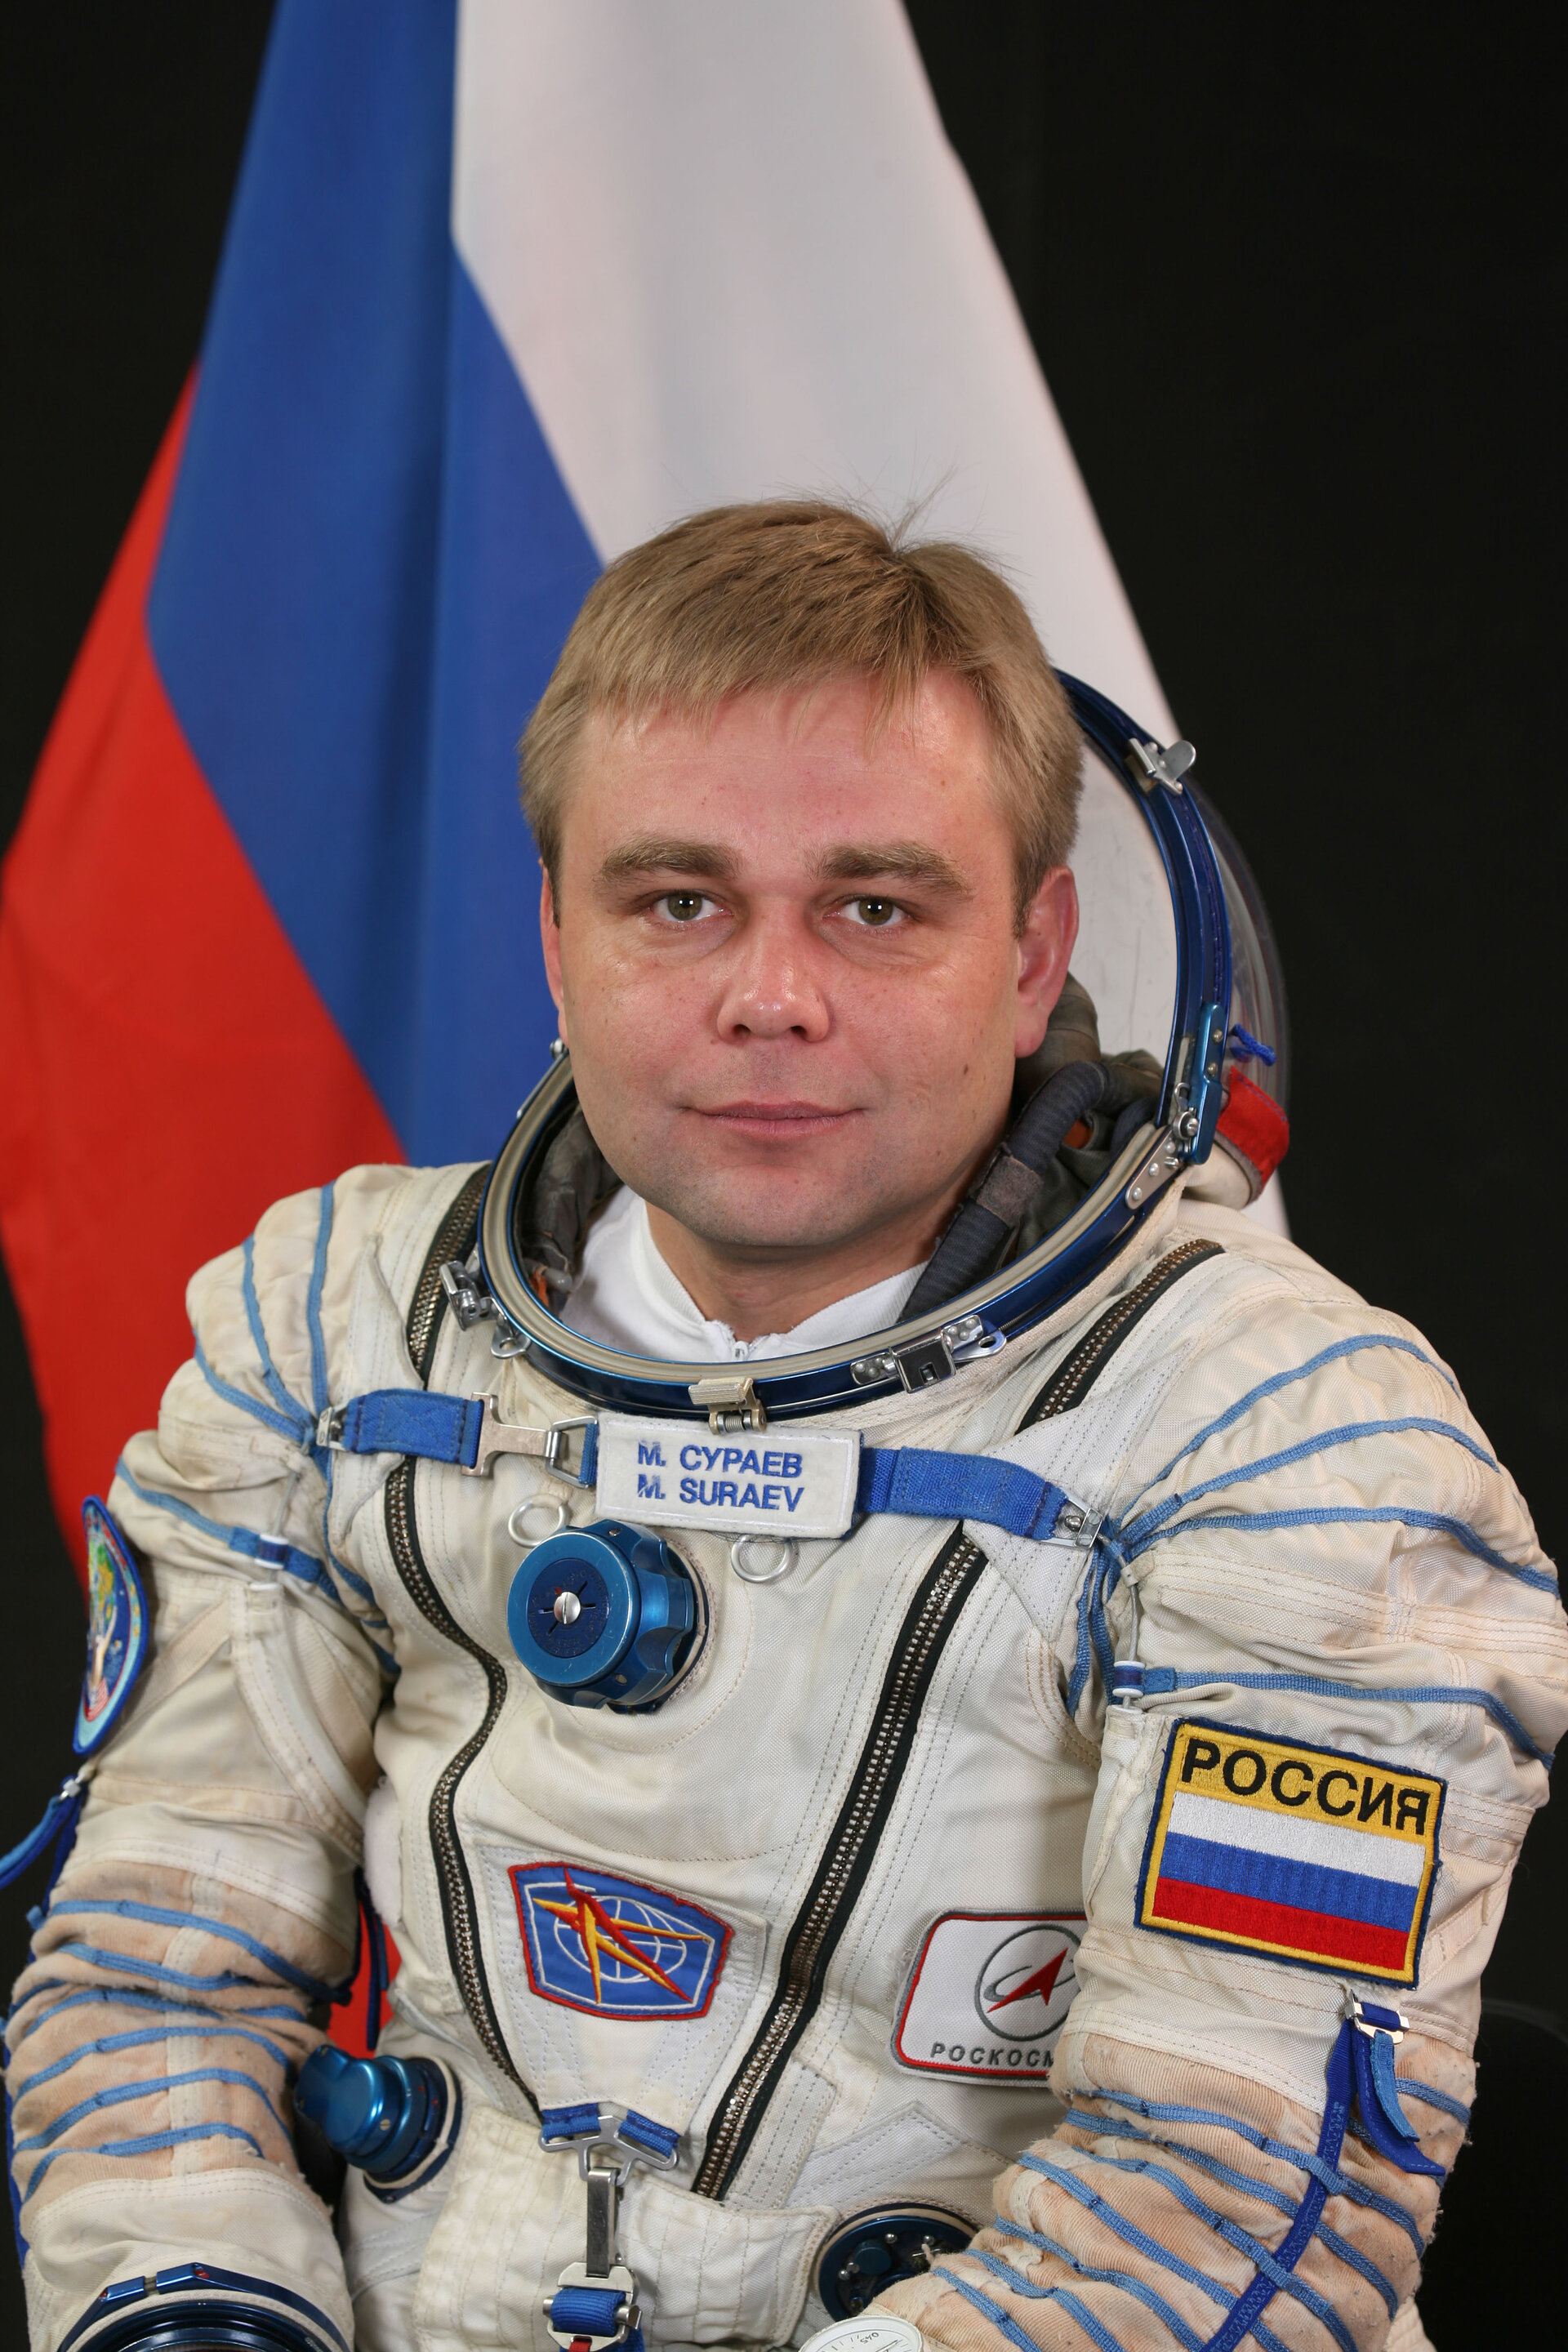 Russian cosmonaut Maxim Suraev